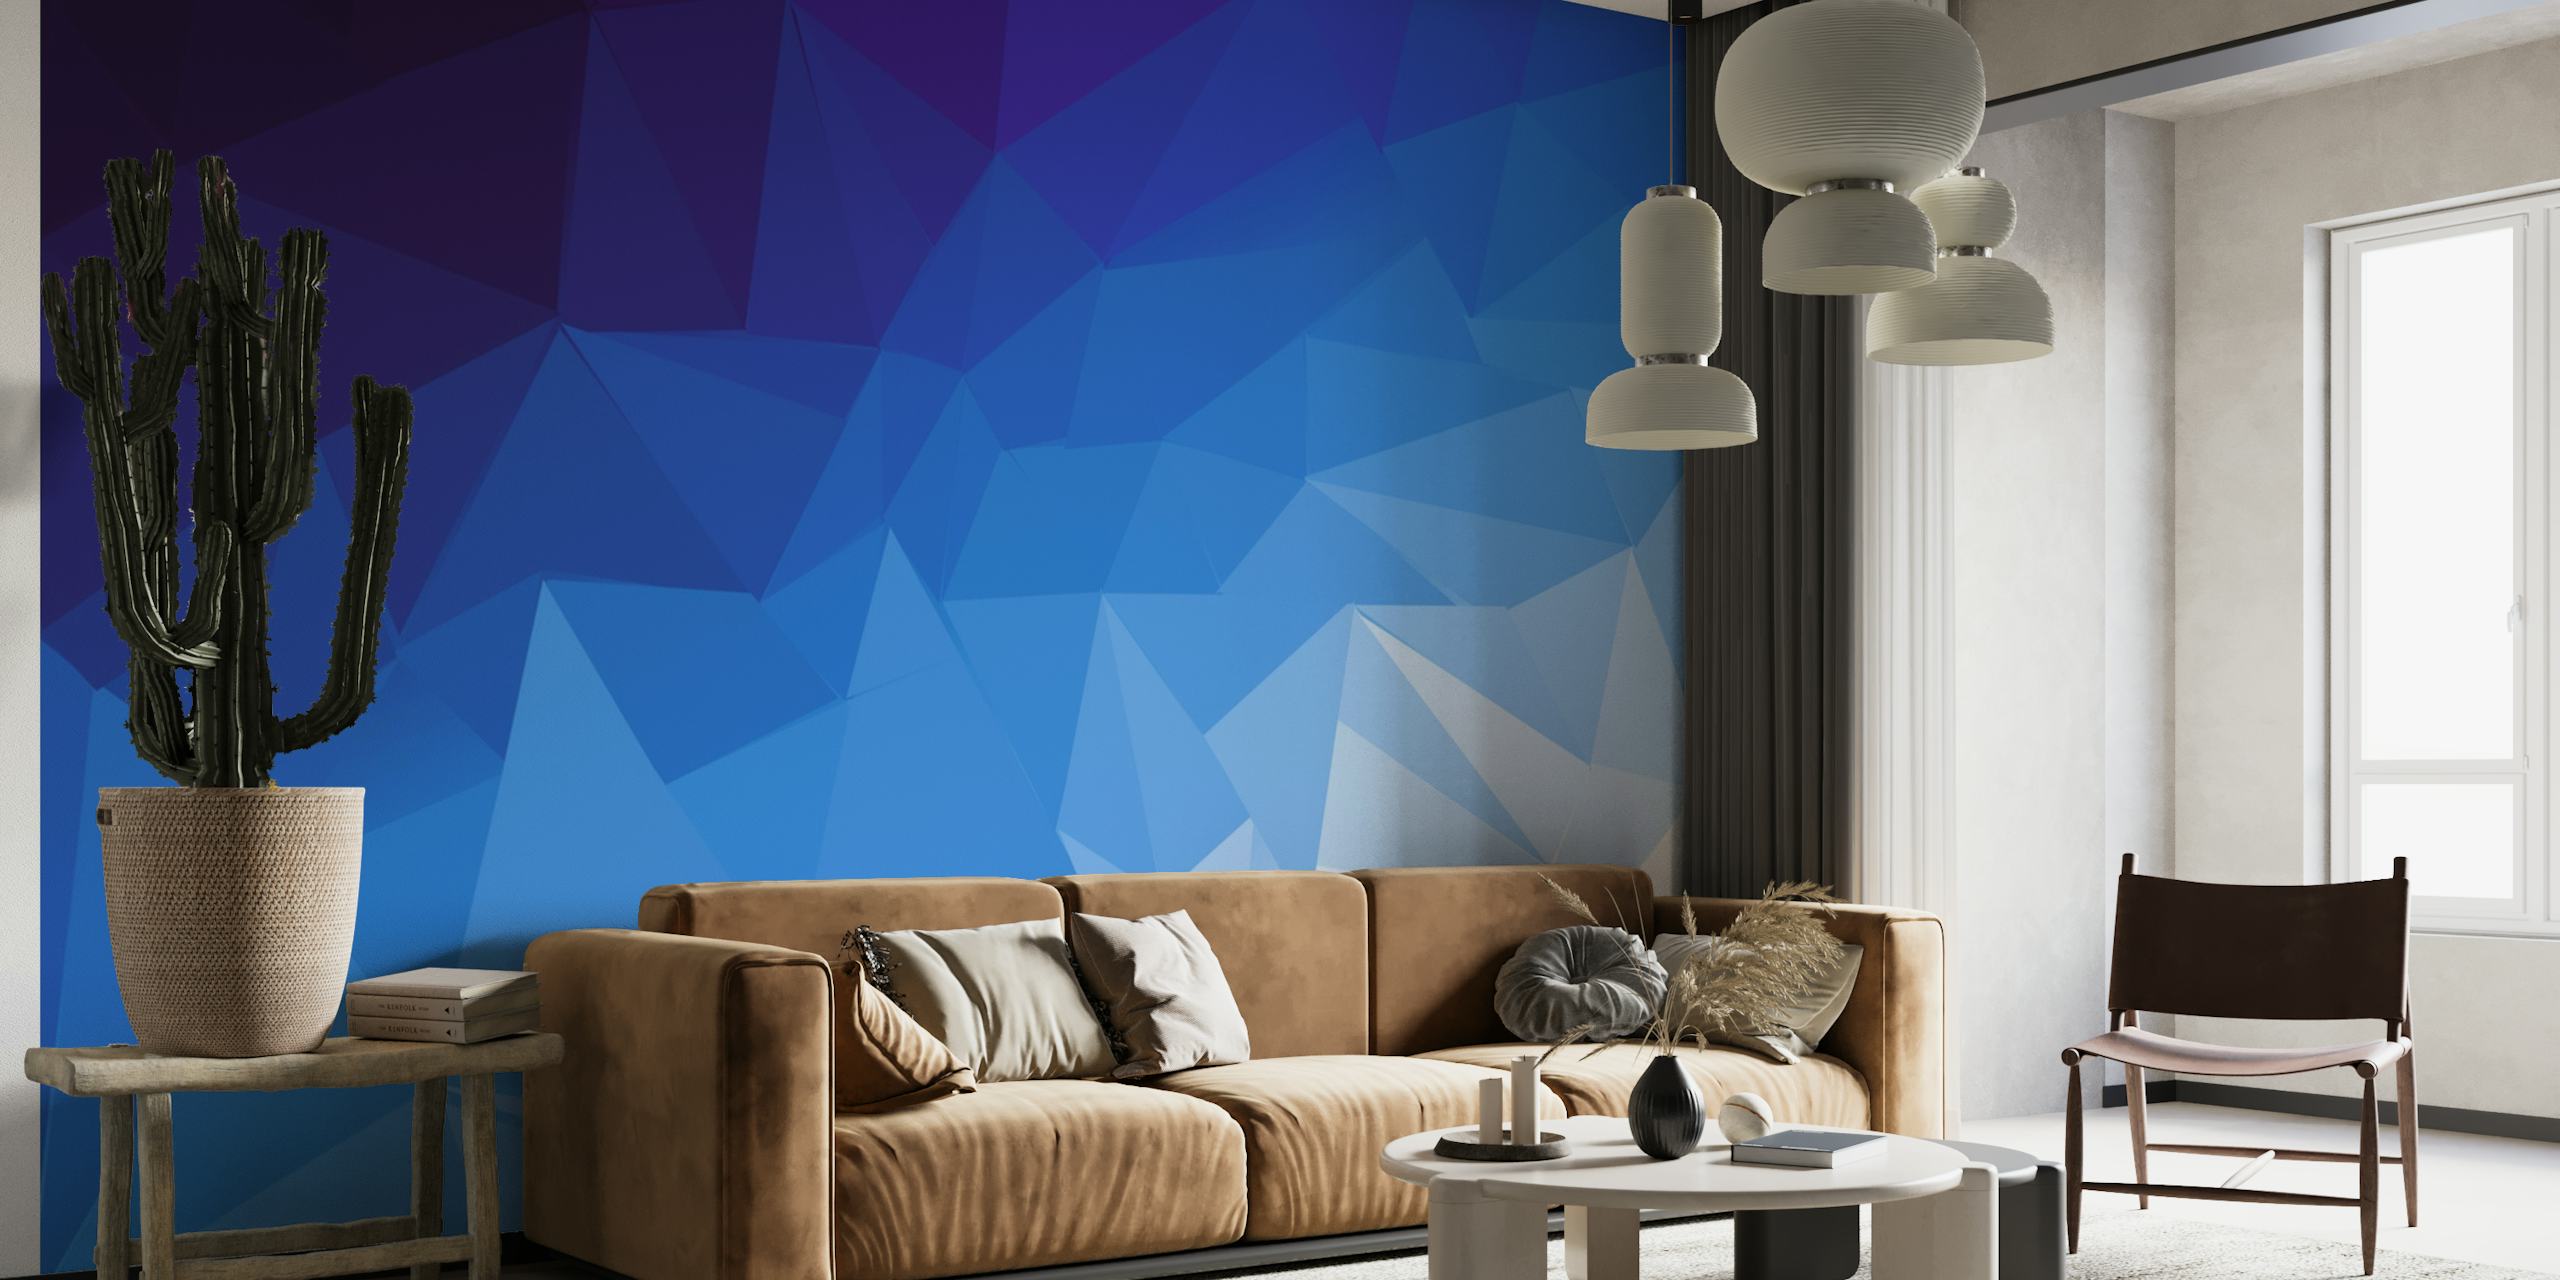 Mural de pared geométrico abstracto inspirado en el océano en tonos azules.